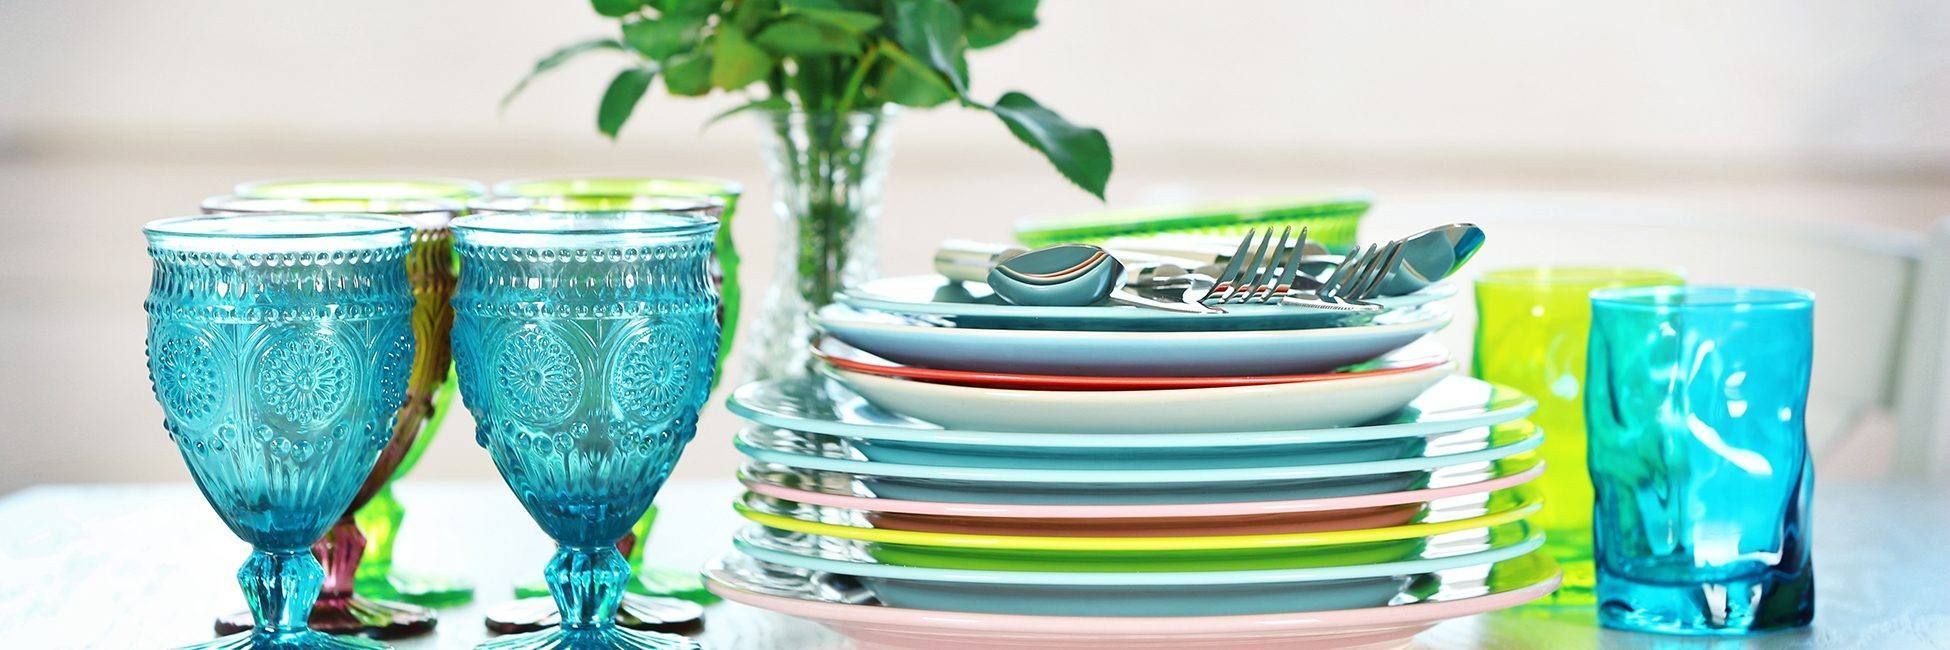 8 важливих питань, які допоможуть вам вибрати ідеальний комплект посуду